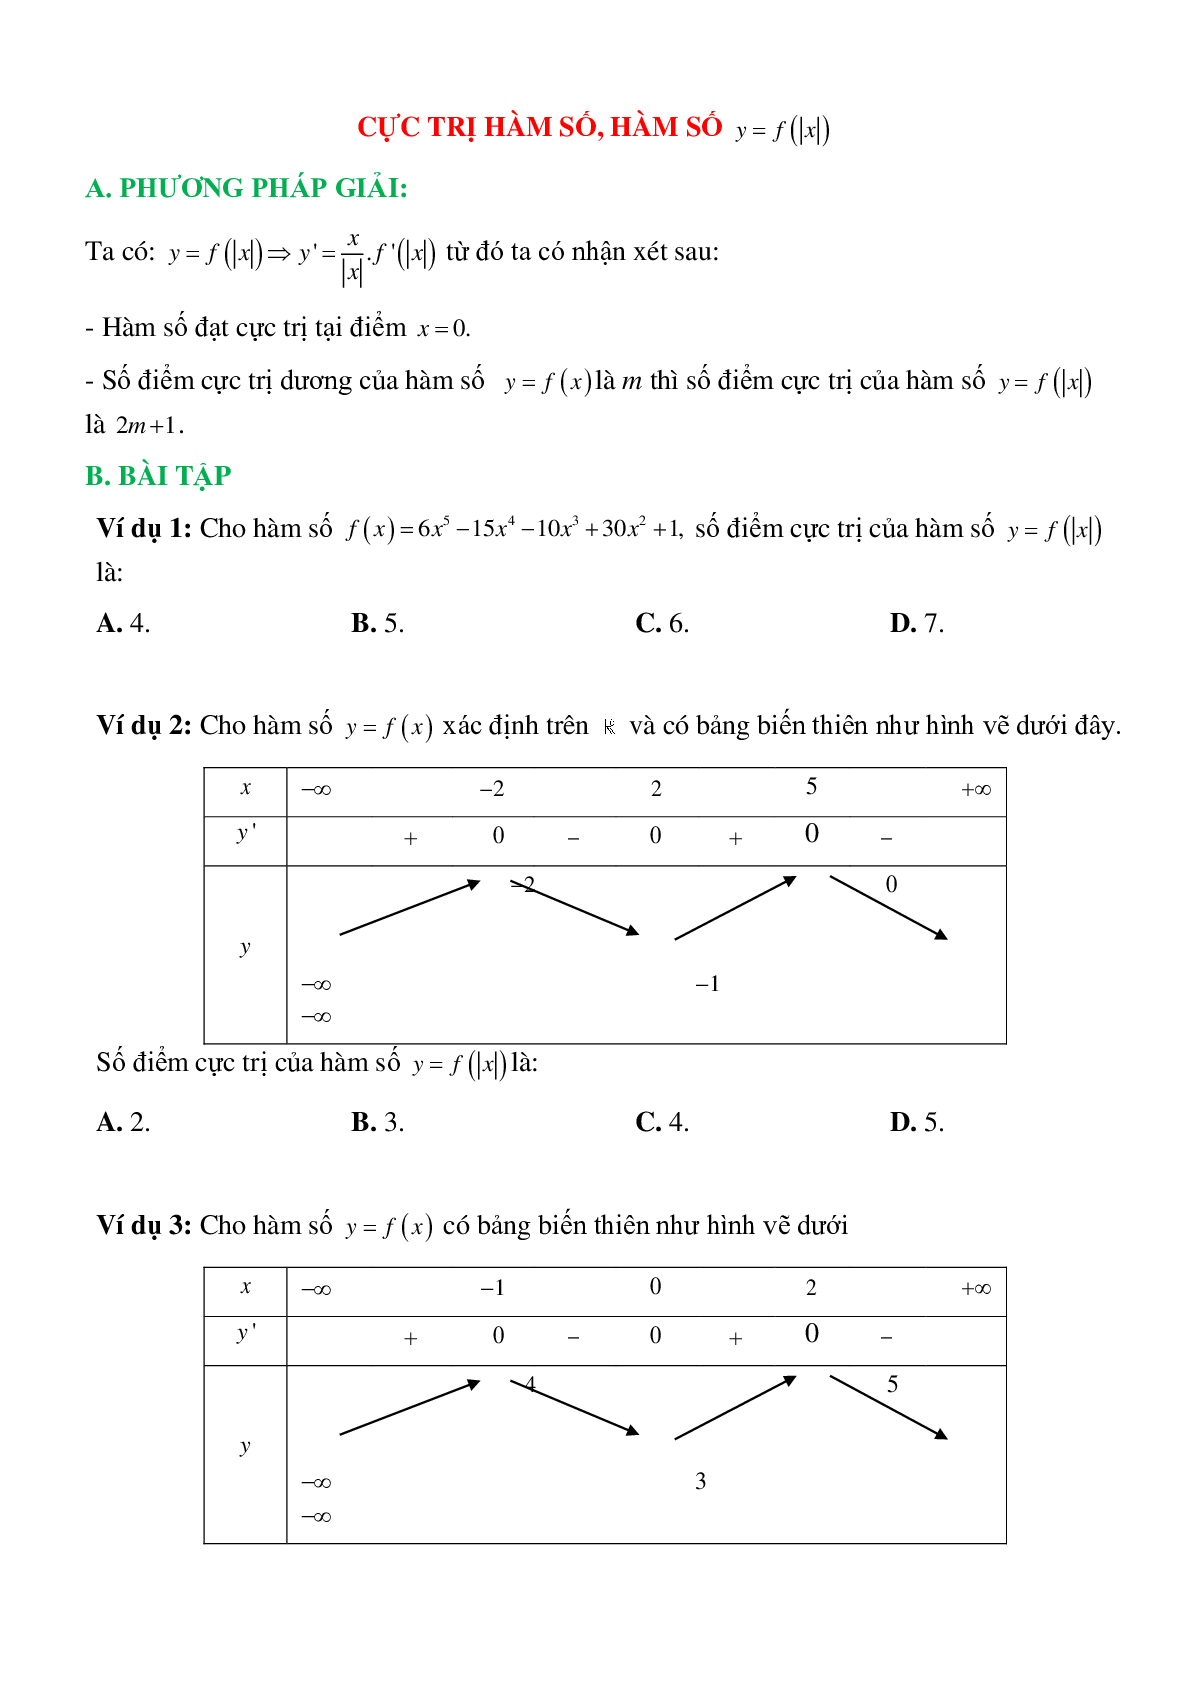 Cực trị hàm số, hàm số y=f(|x|) (trang 1)